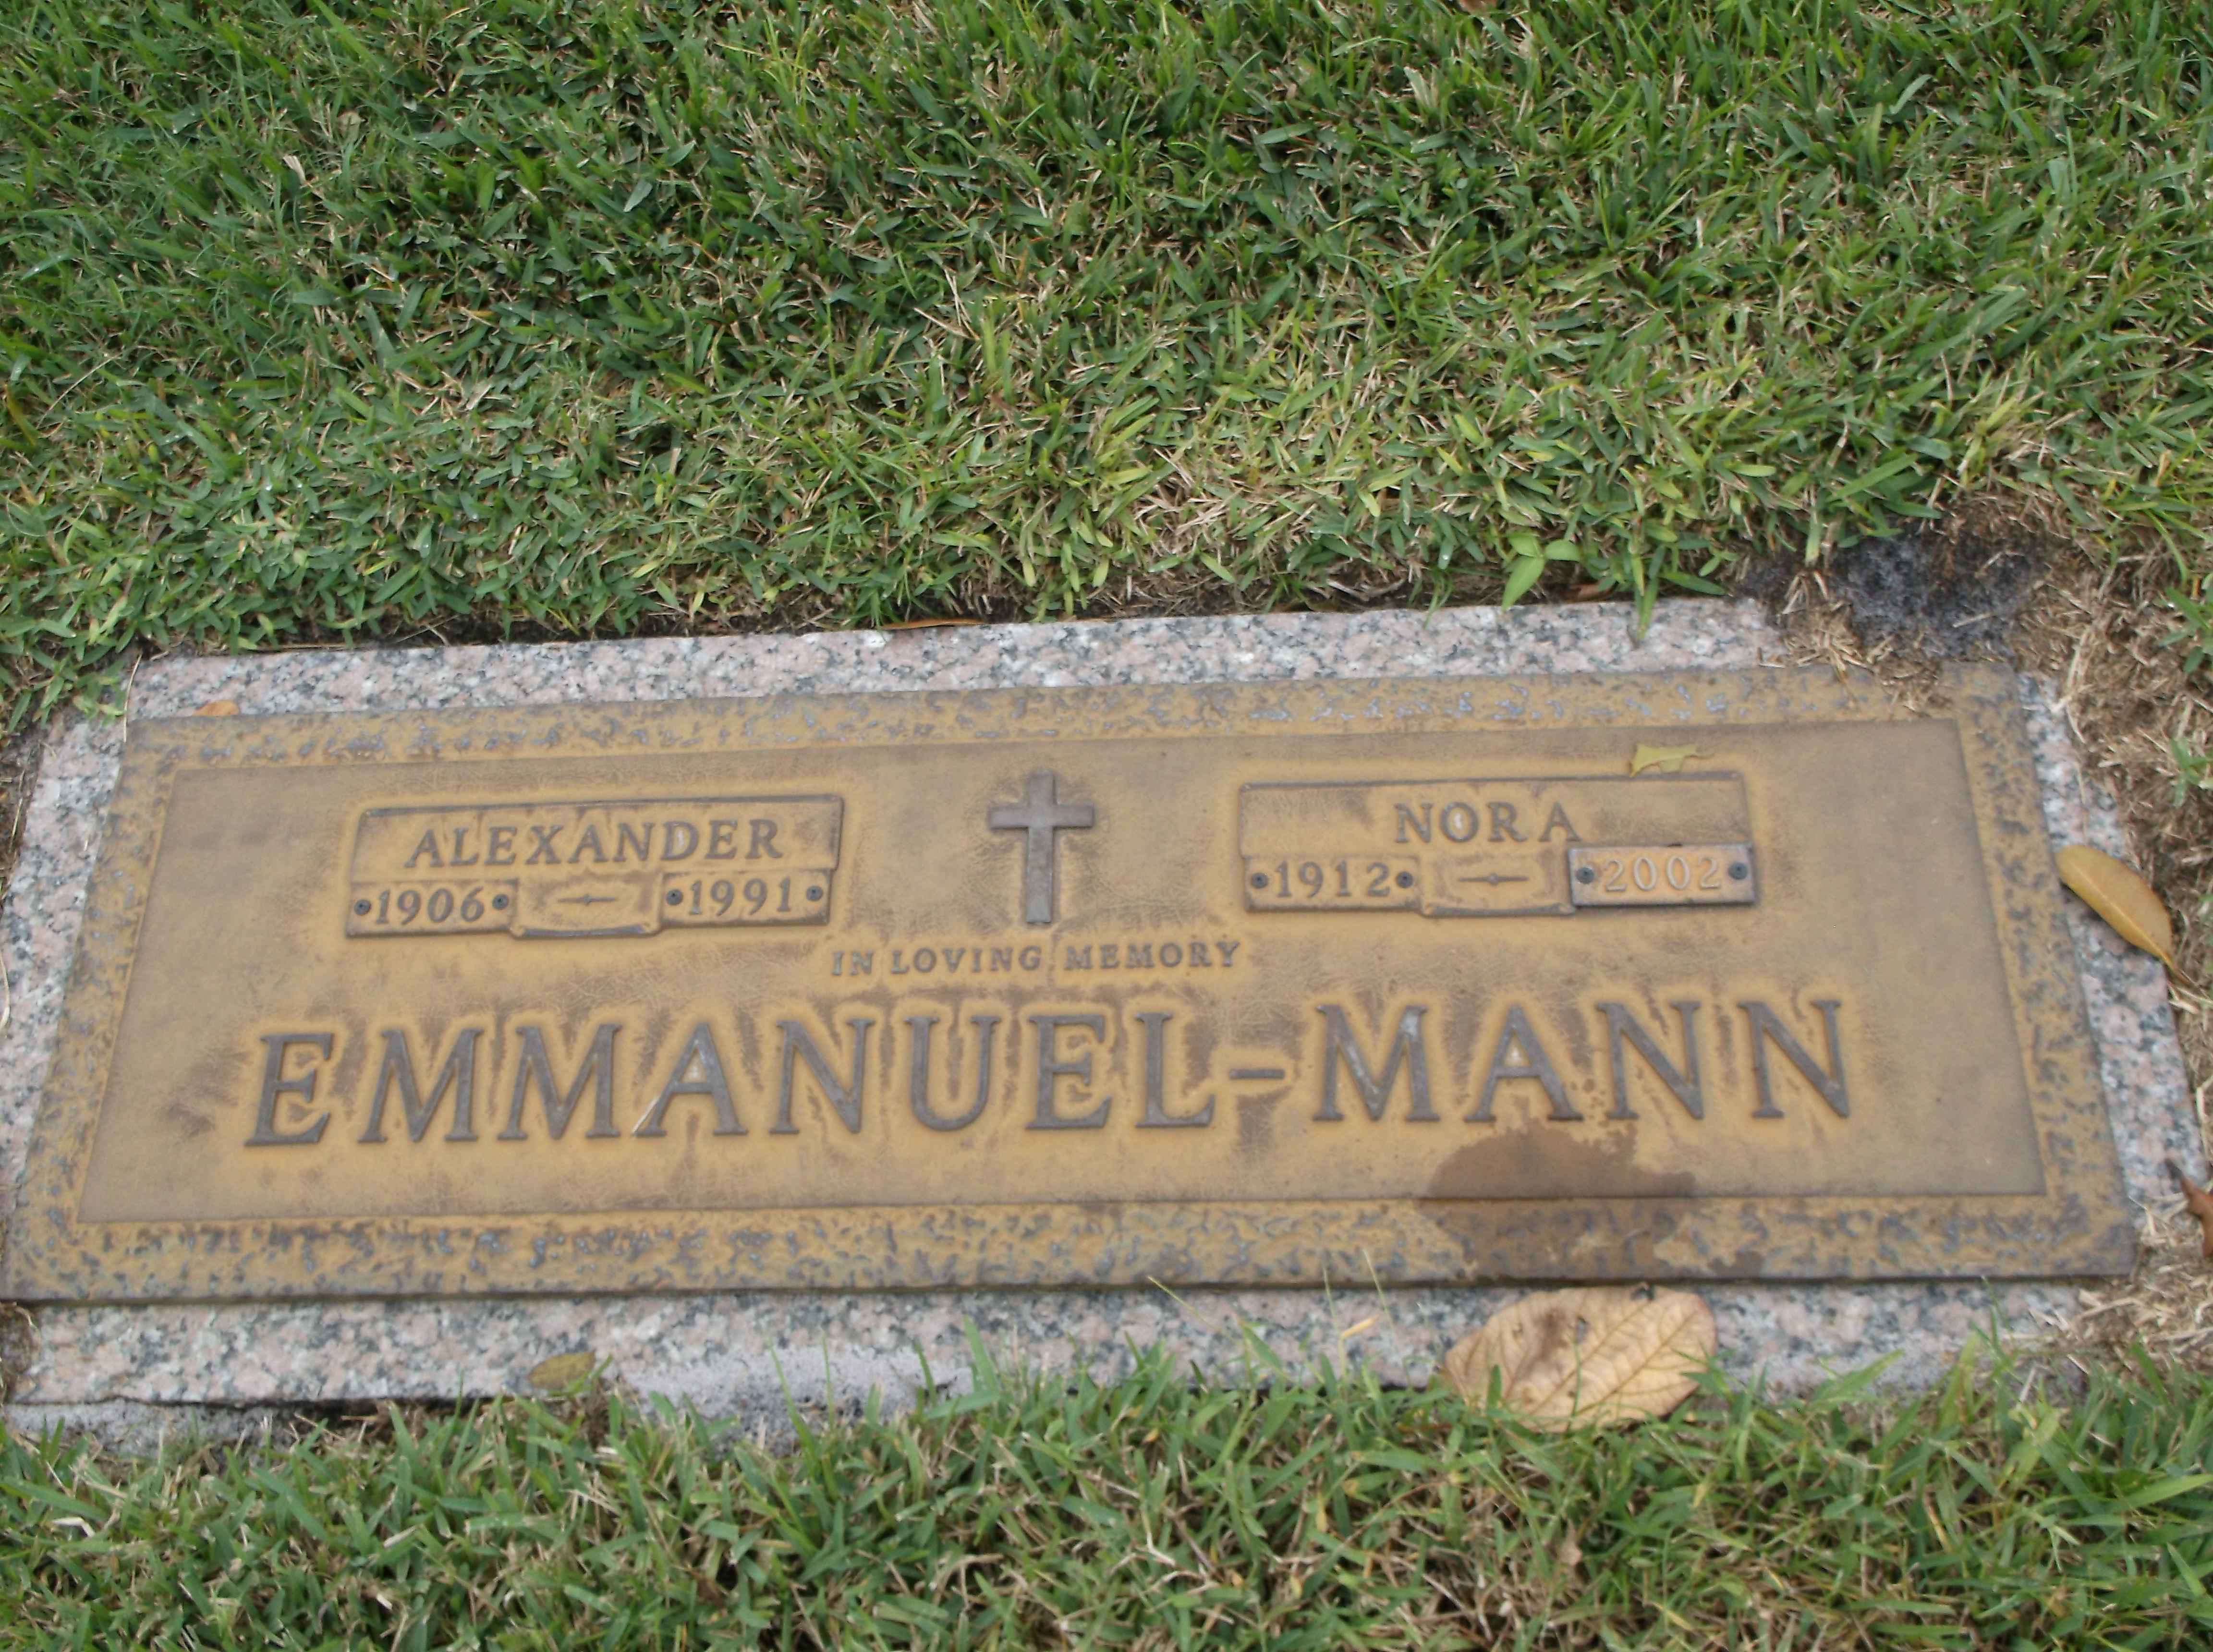 Alexander Emmanuel-Mann